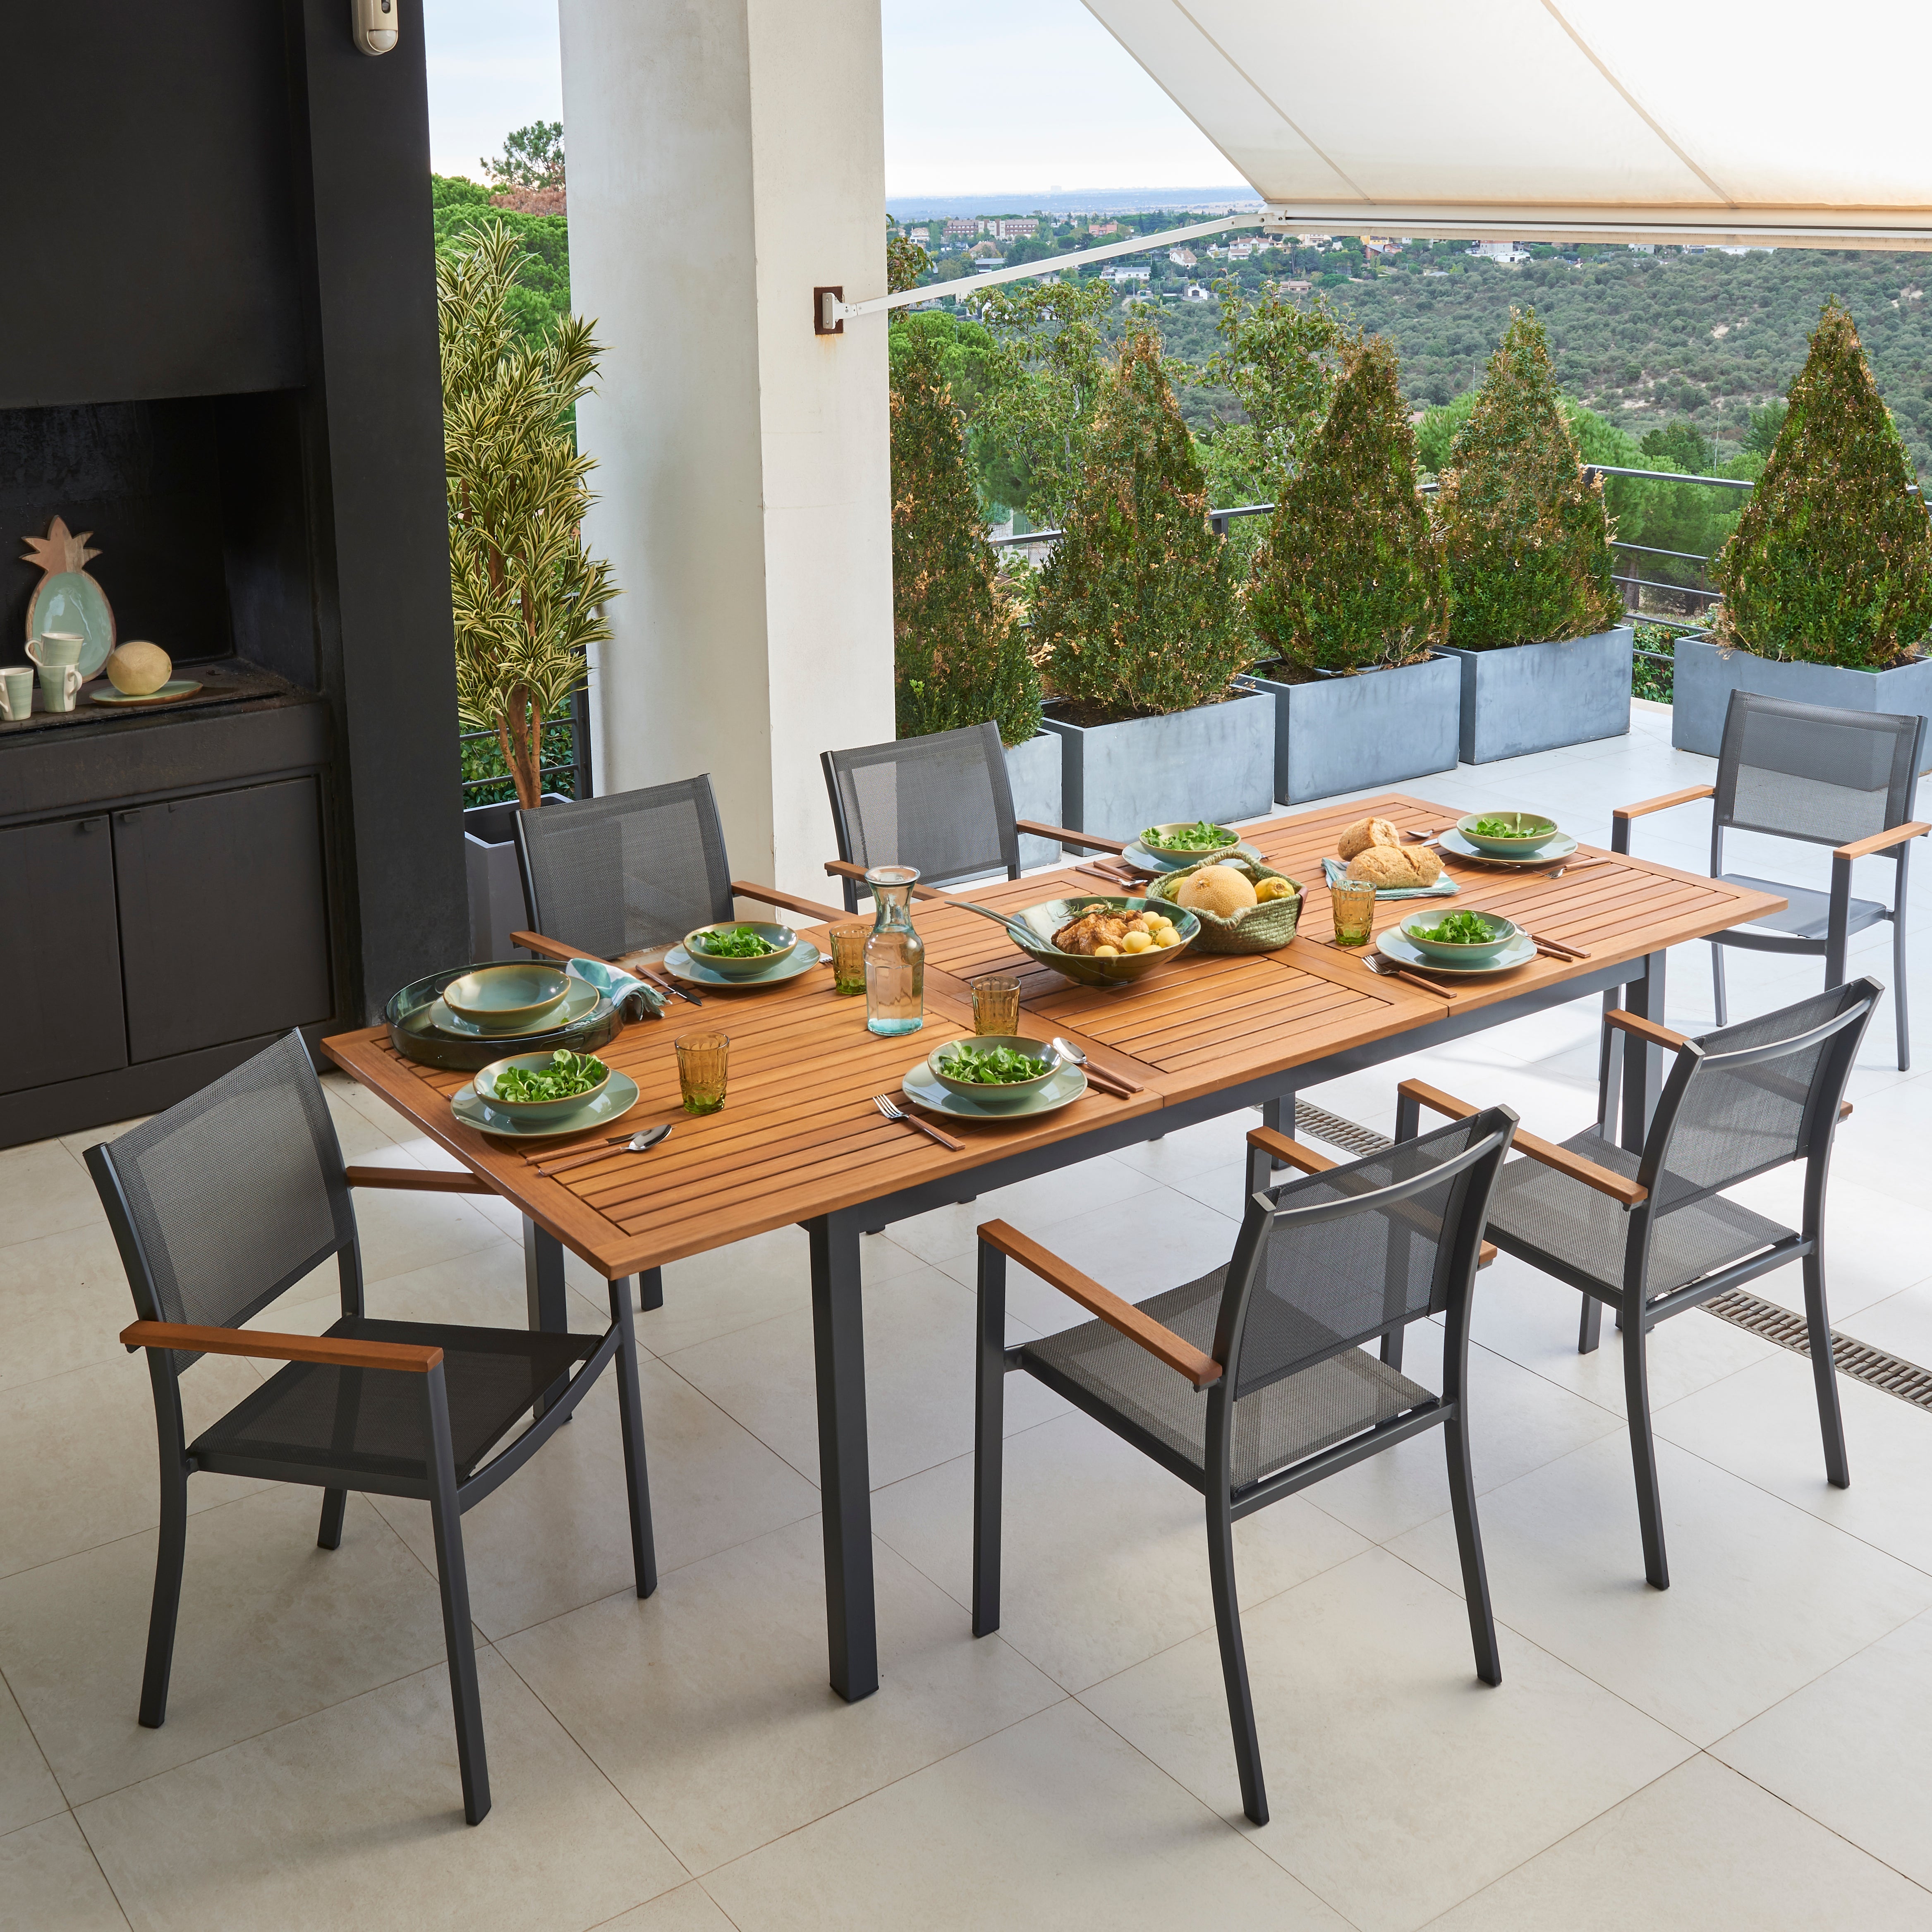 Conjuntos de mesas y sillas de exterior | Leroy Merlin